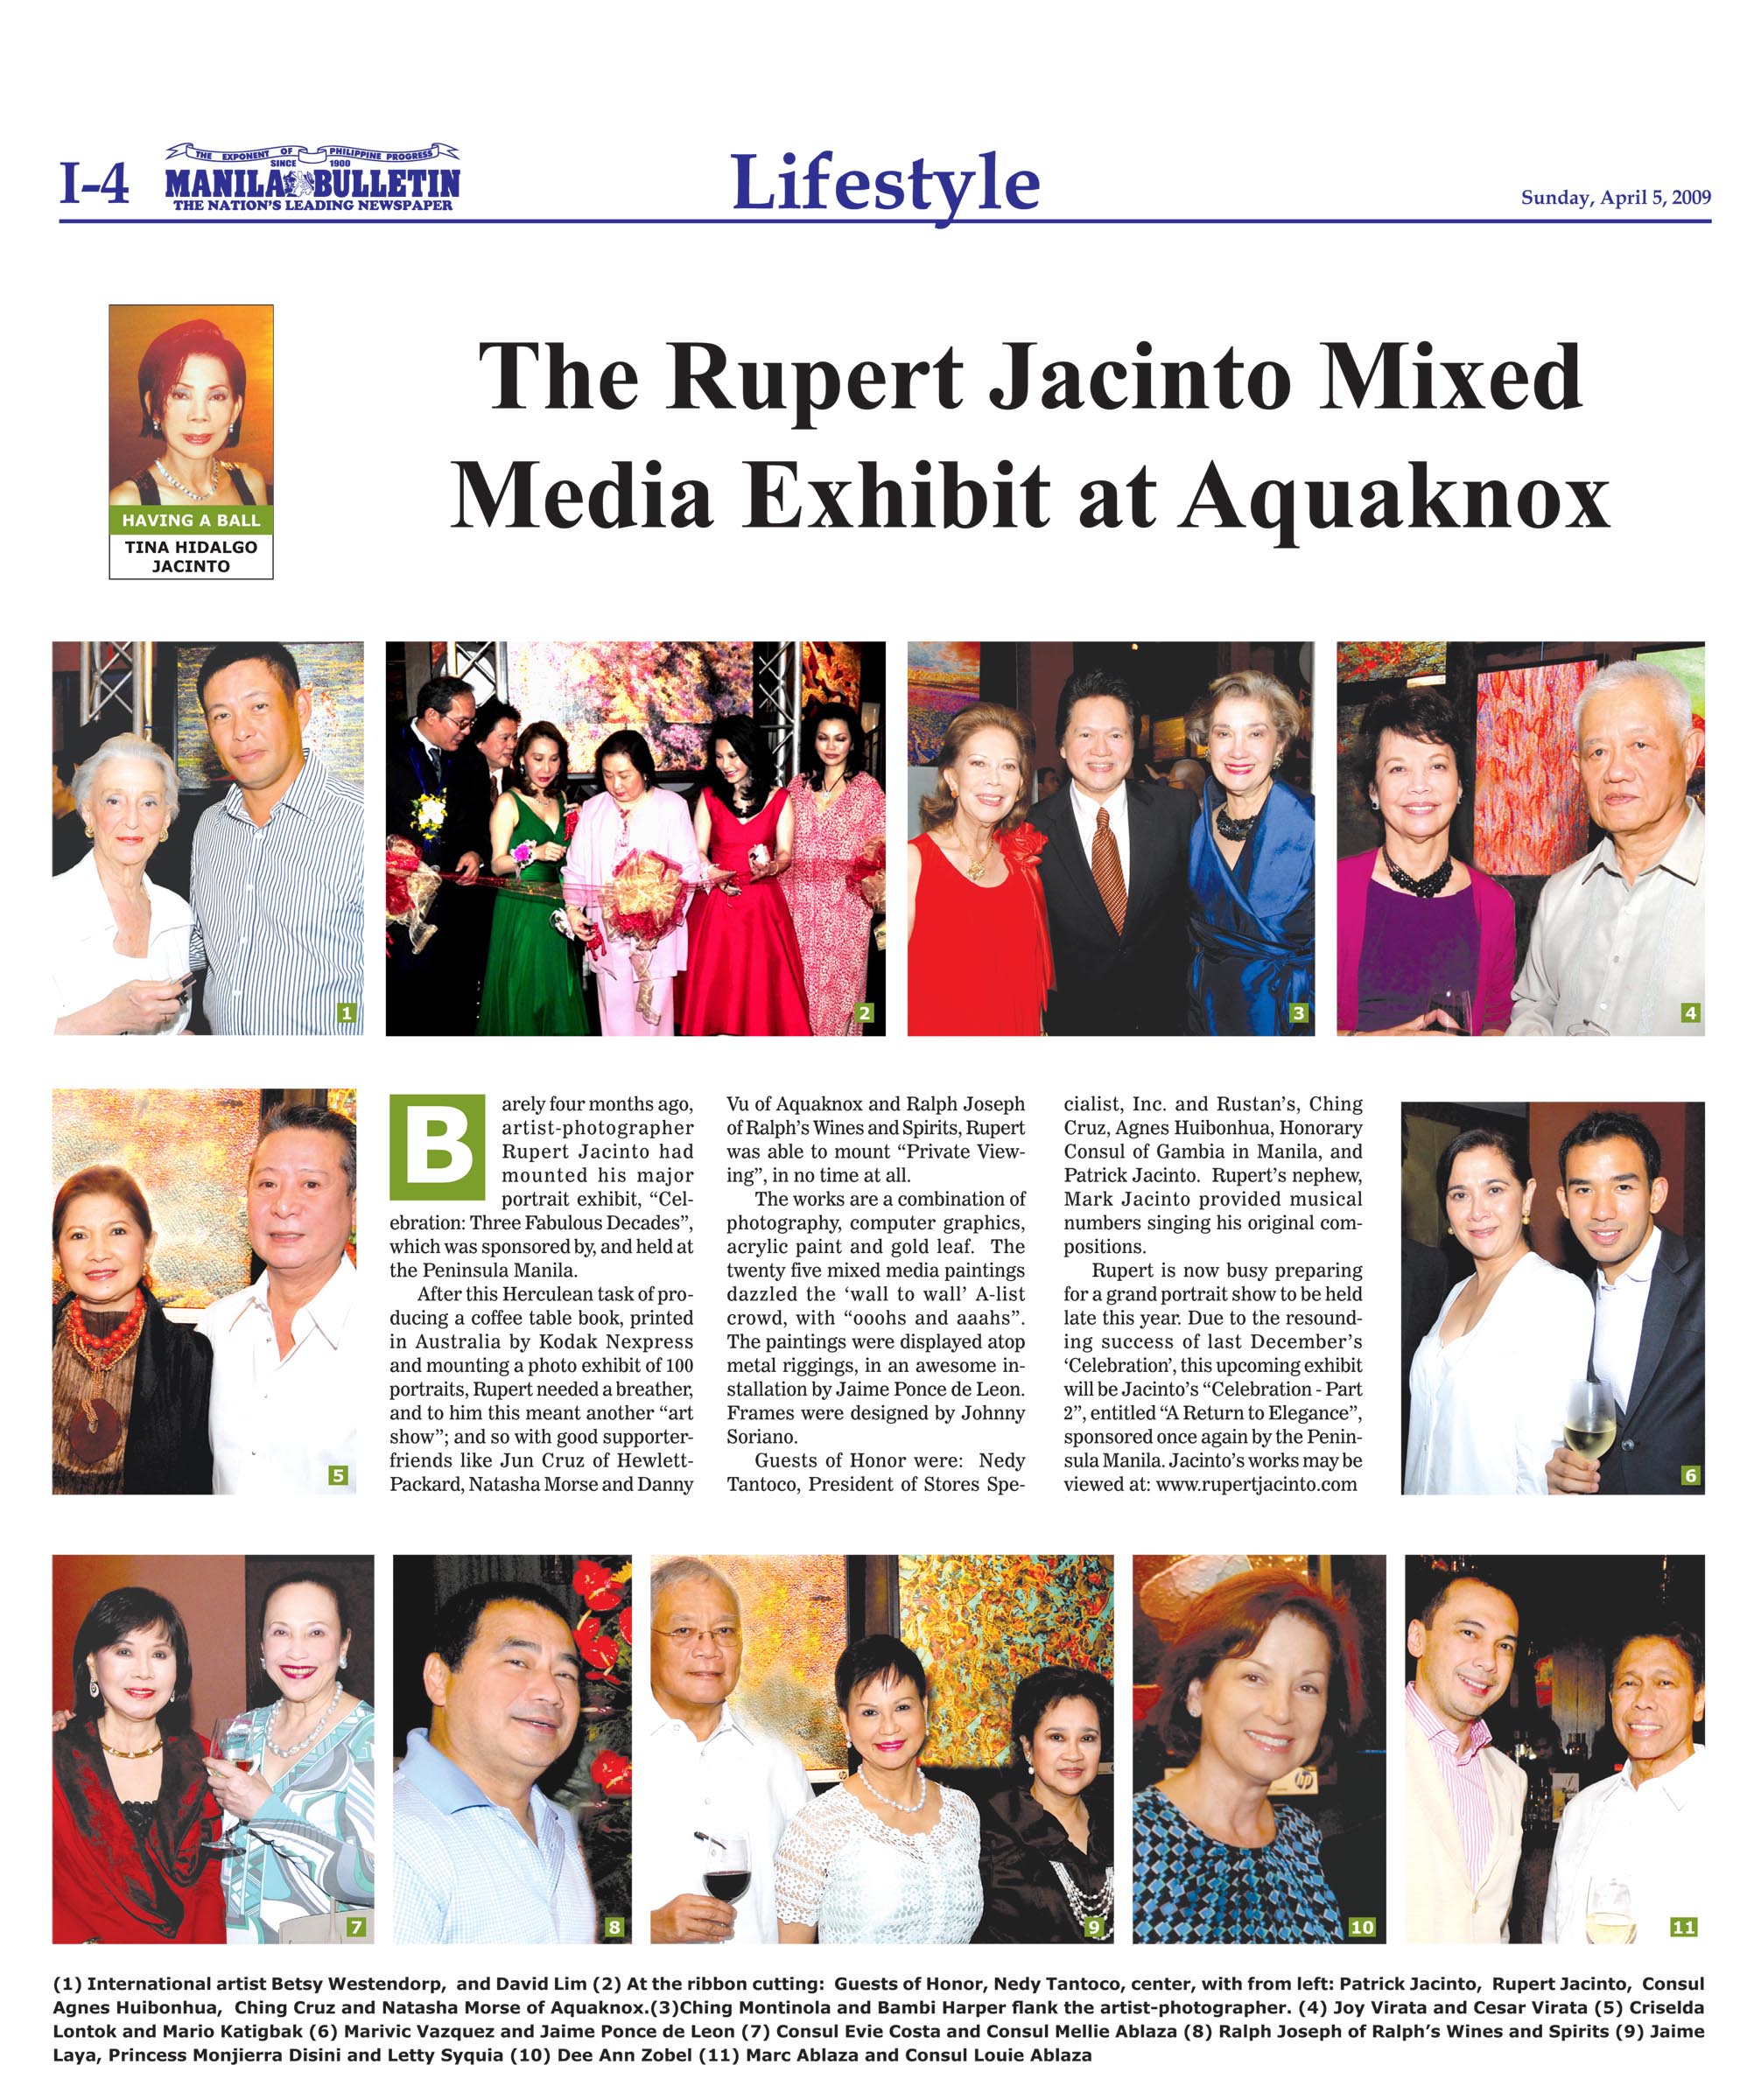 The Rupert Jacinto Mixed Media Exhibit at Aquanox